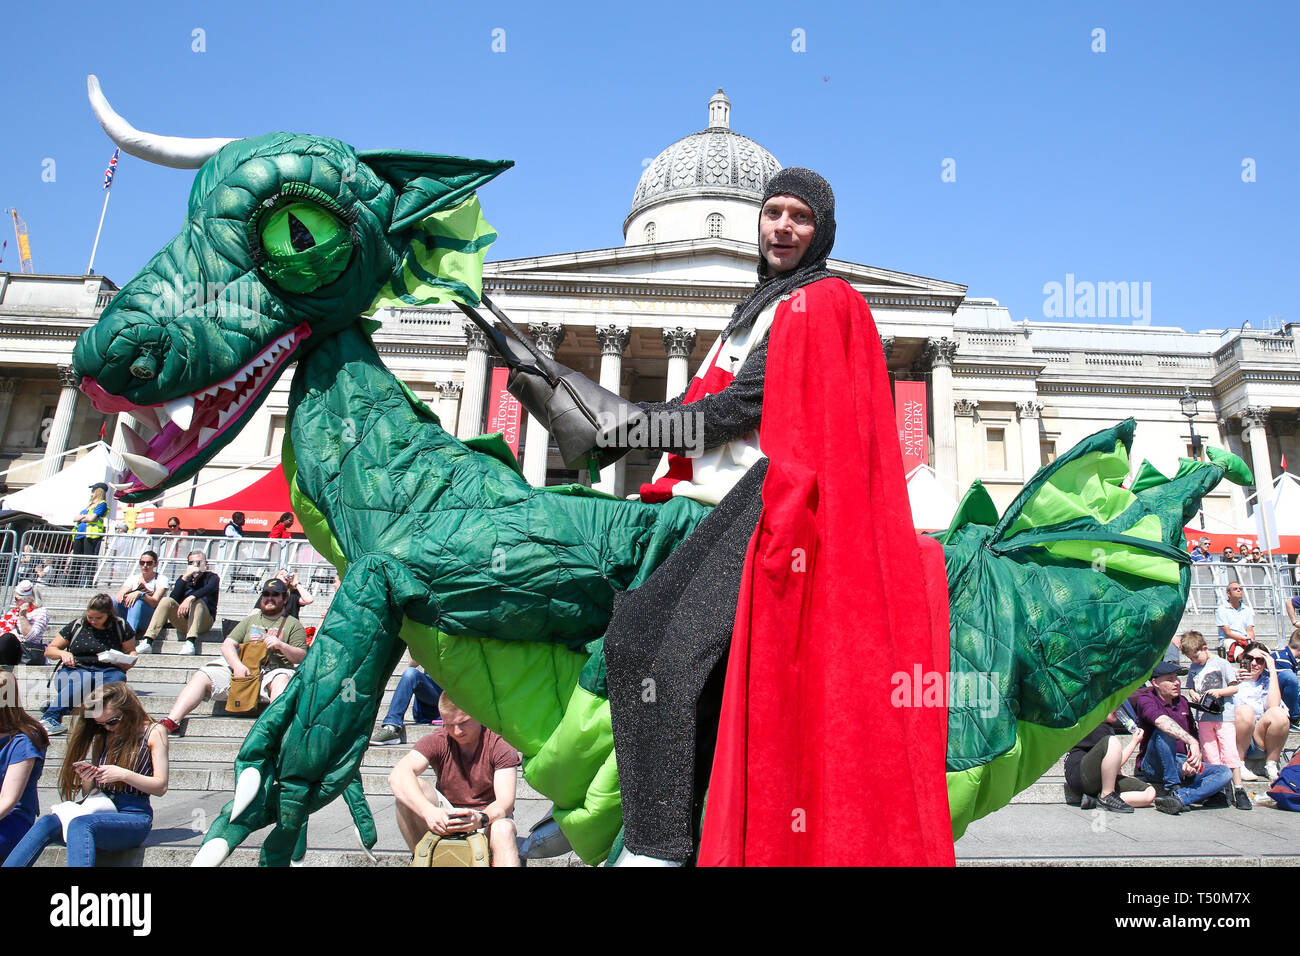 Trafalgar Square. Londres, Royaume-Uni. Apr 20, 2019. Un homme habillé comme un dragon sur St George assiste à la fête annuelle de "St George" à Trafalgar Square, pour célébrer le saint patron de l'Angleterre. St George's Day est le 23 avril. Credit : Dinendra Haria/Alamy Live News Banque D'Images